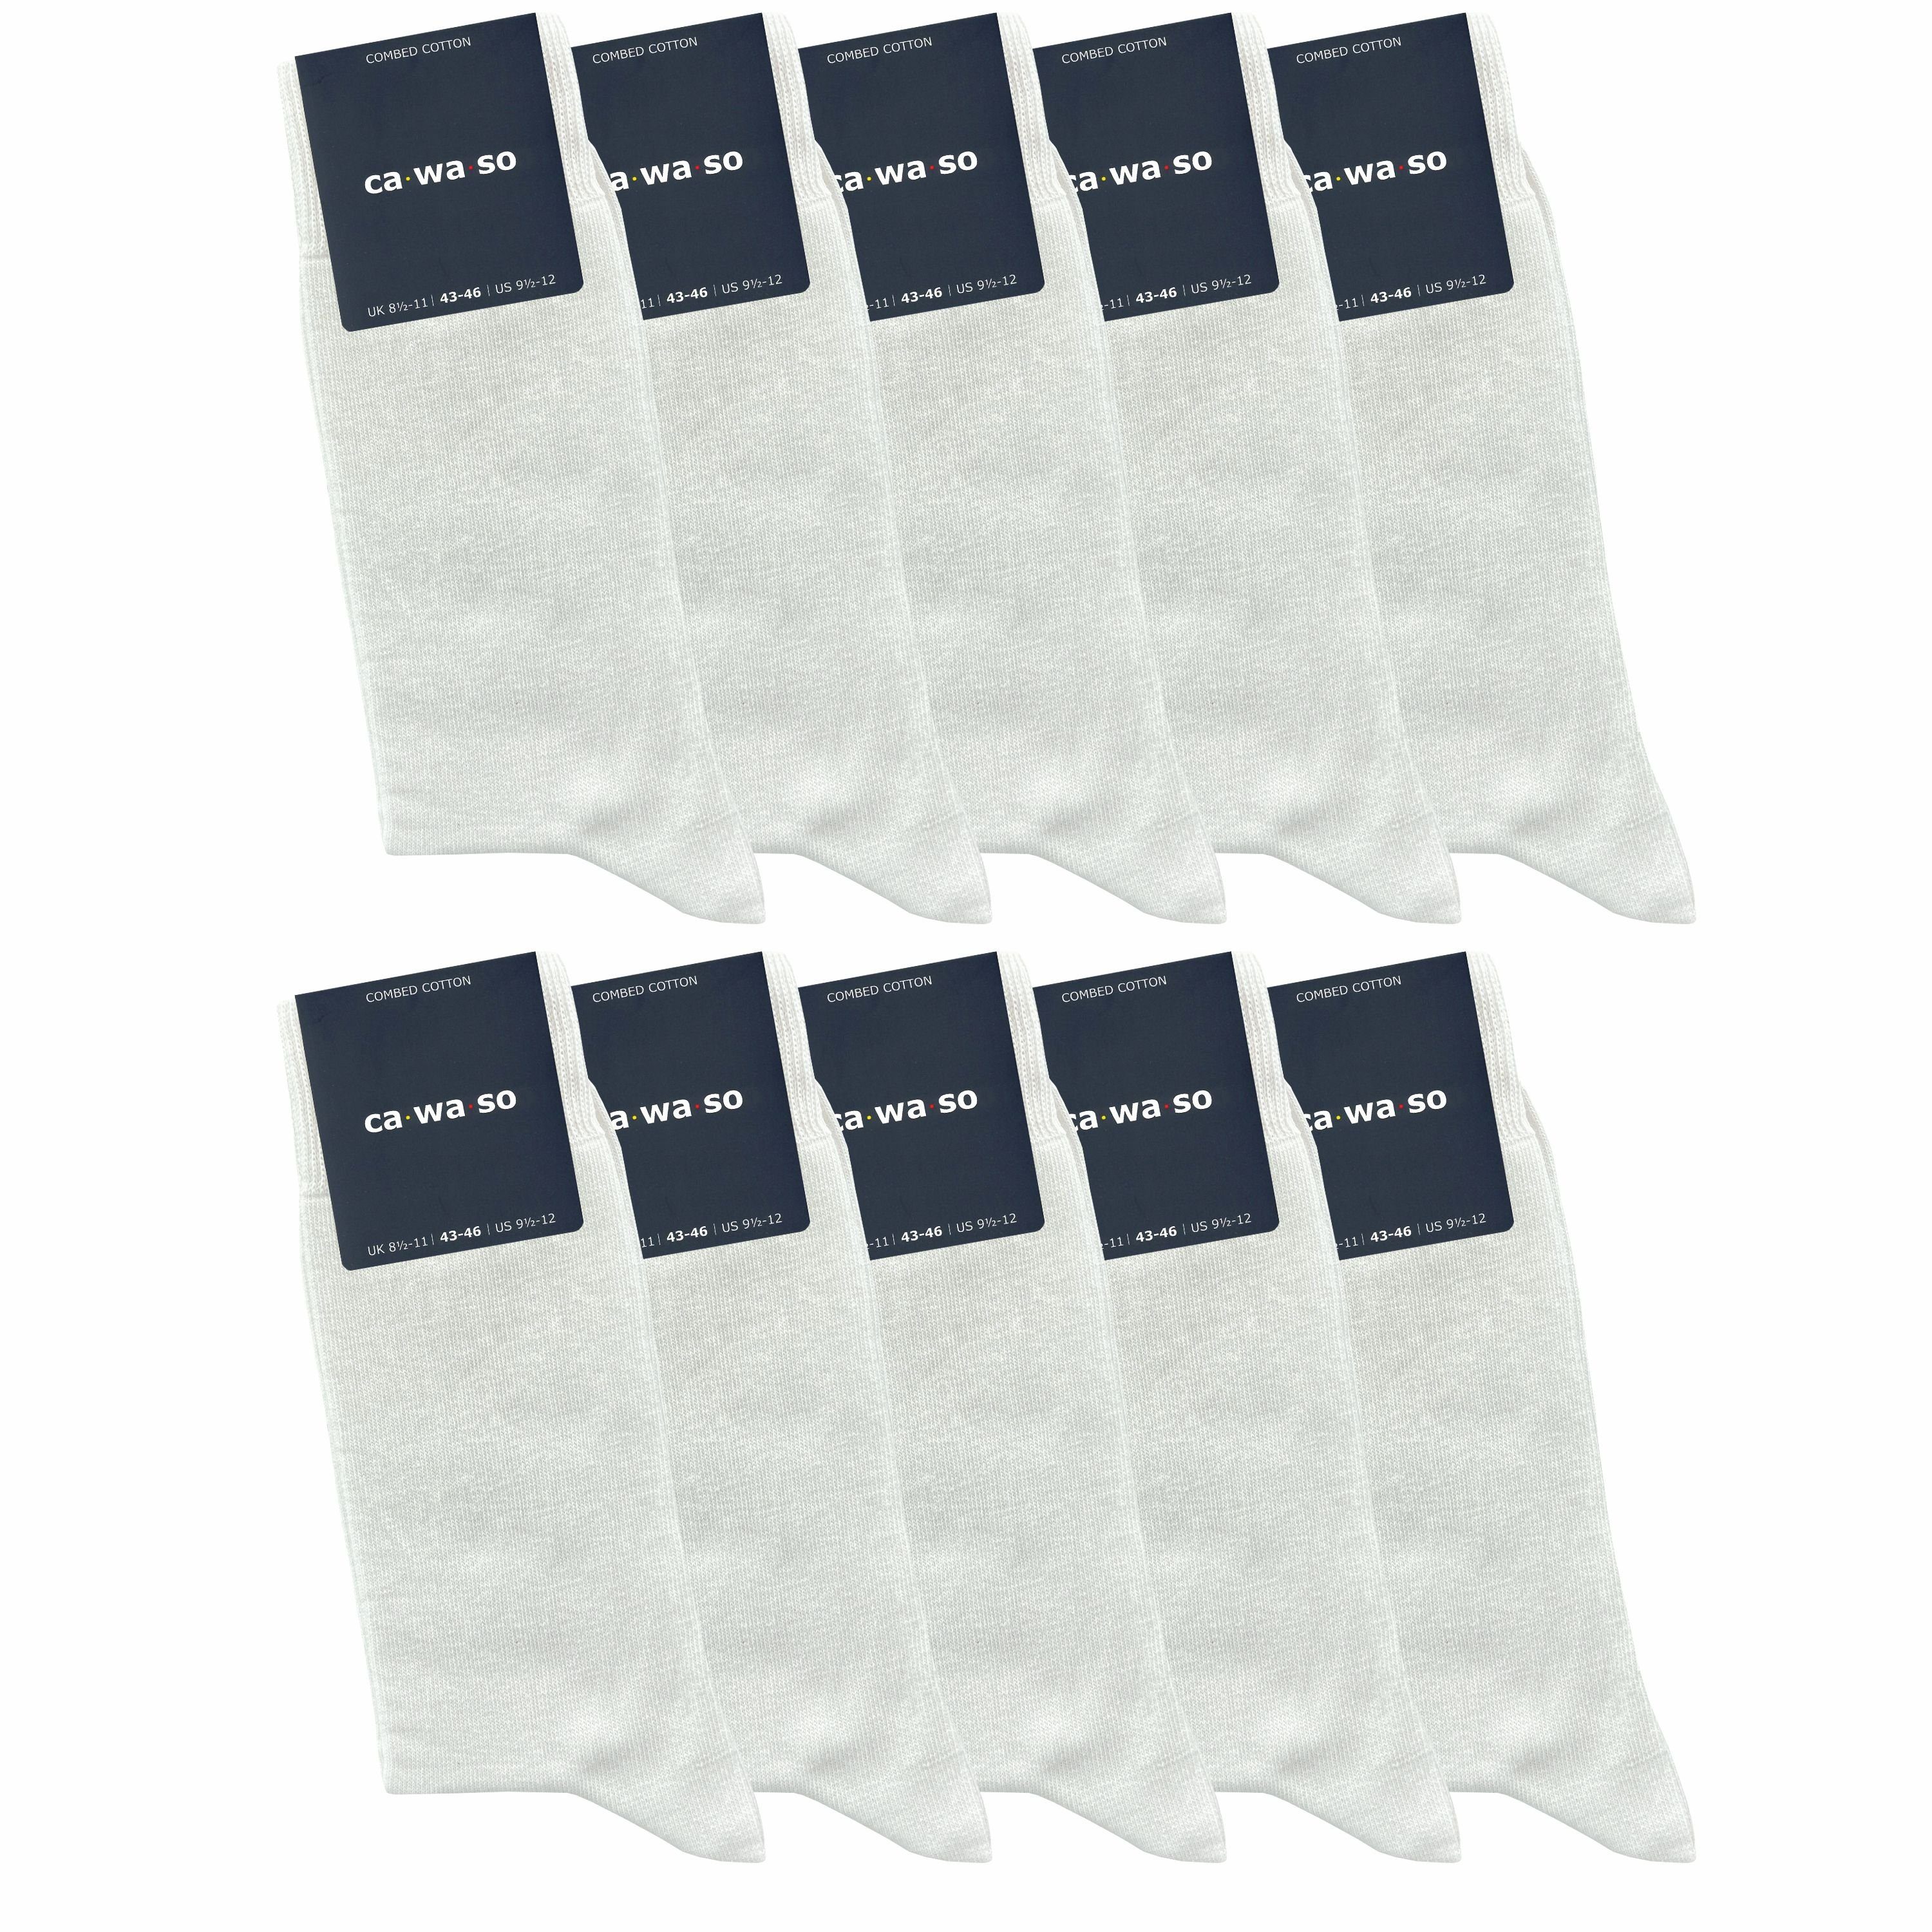 ca·wa·so Socken für Damen & Herren - bequem & weich - aus doppelt gekämmter  Baumwolle (10 Paar) Socken in schwarz, bunt, grau, blau und weiteren Farben